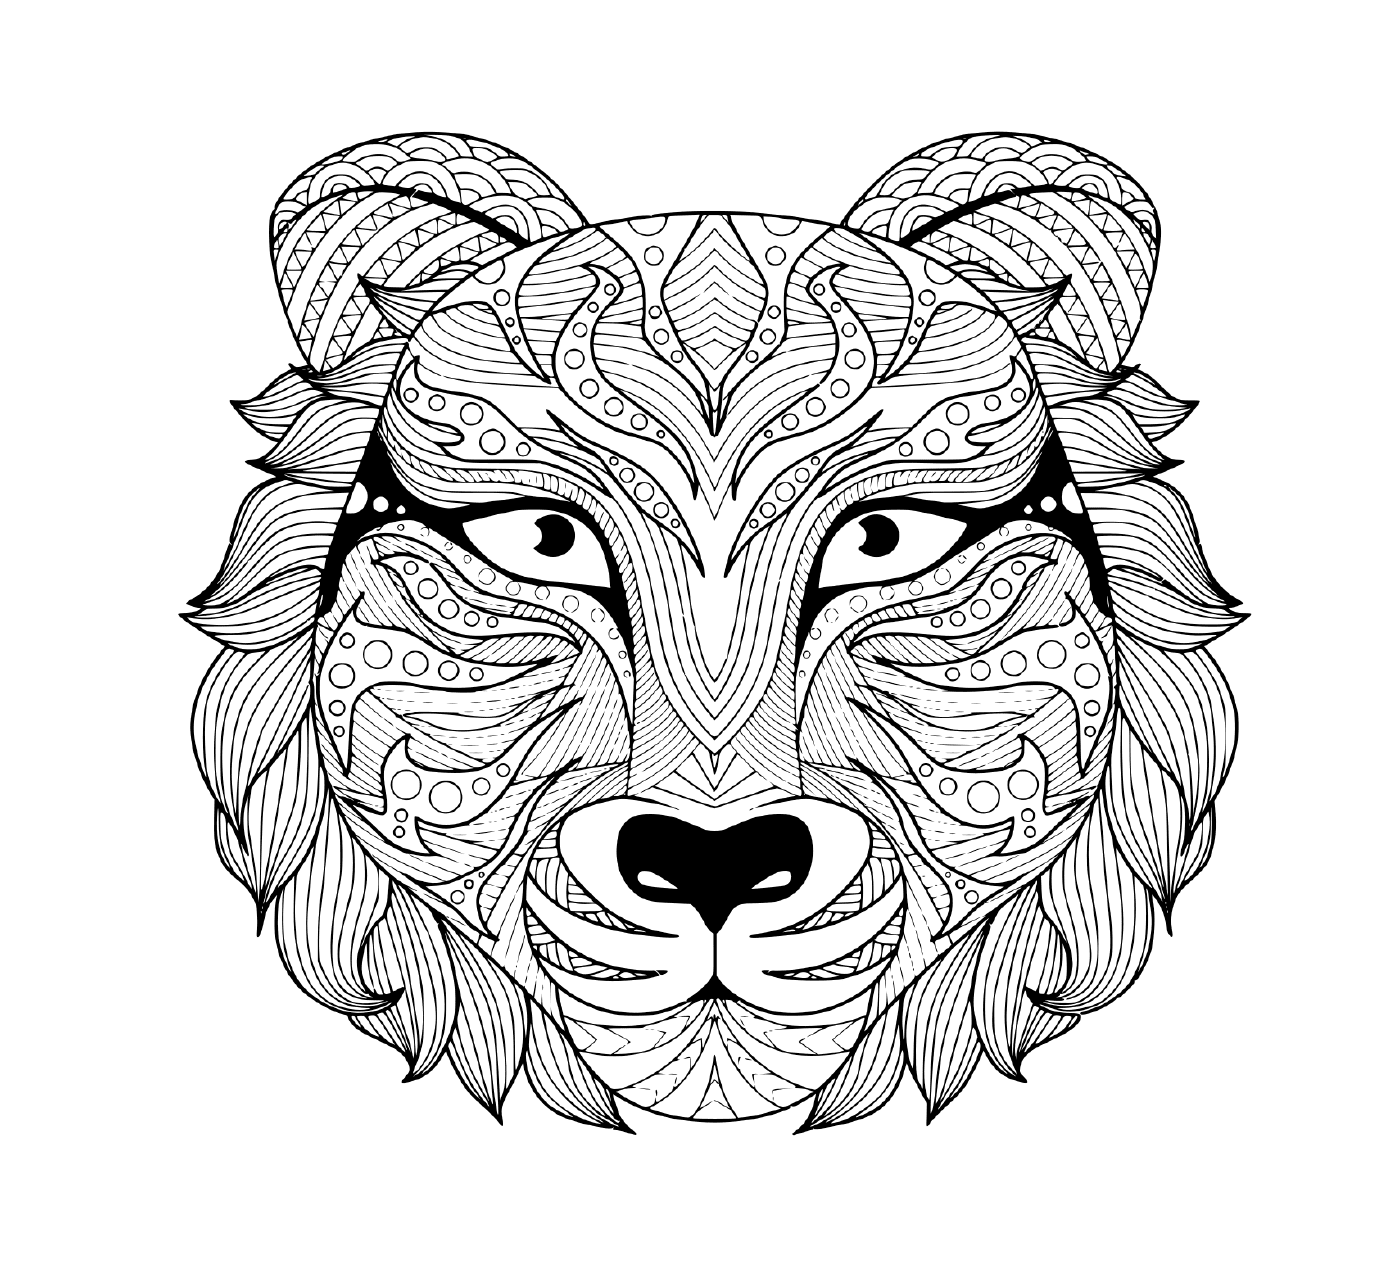  una rappresentazione tatuata di una testa di tigre adulta con occhi colorati 